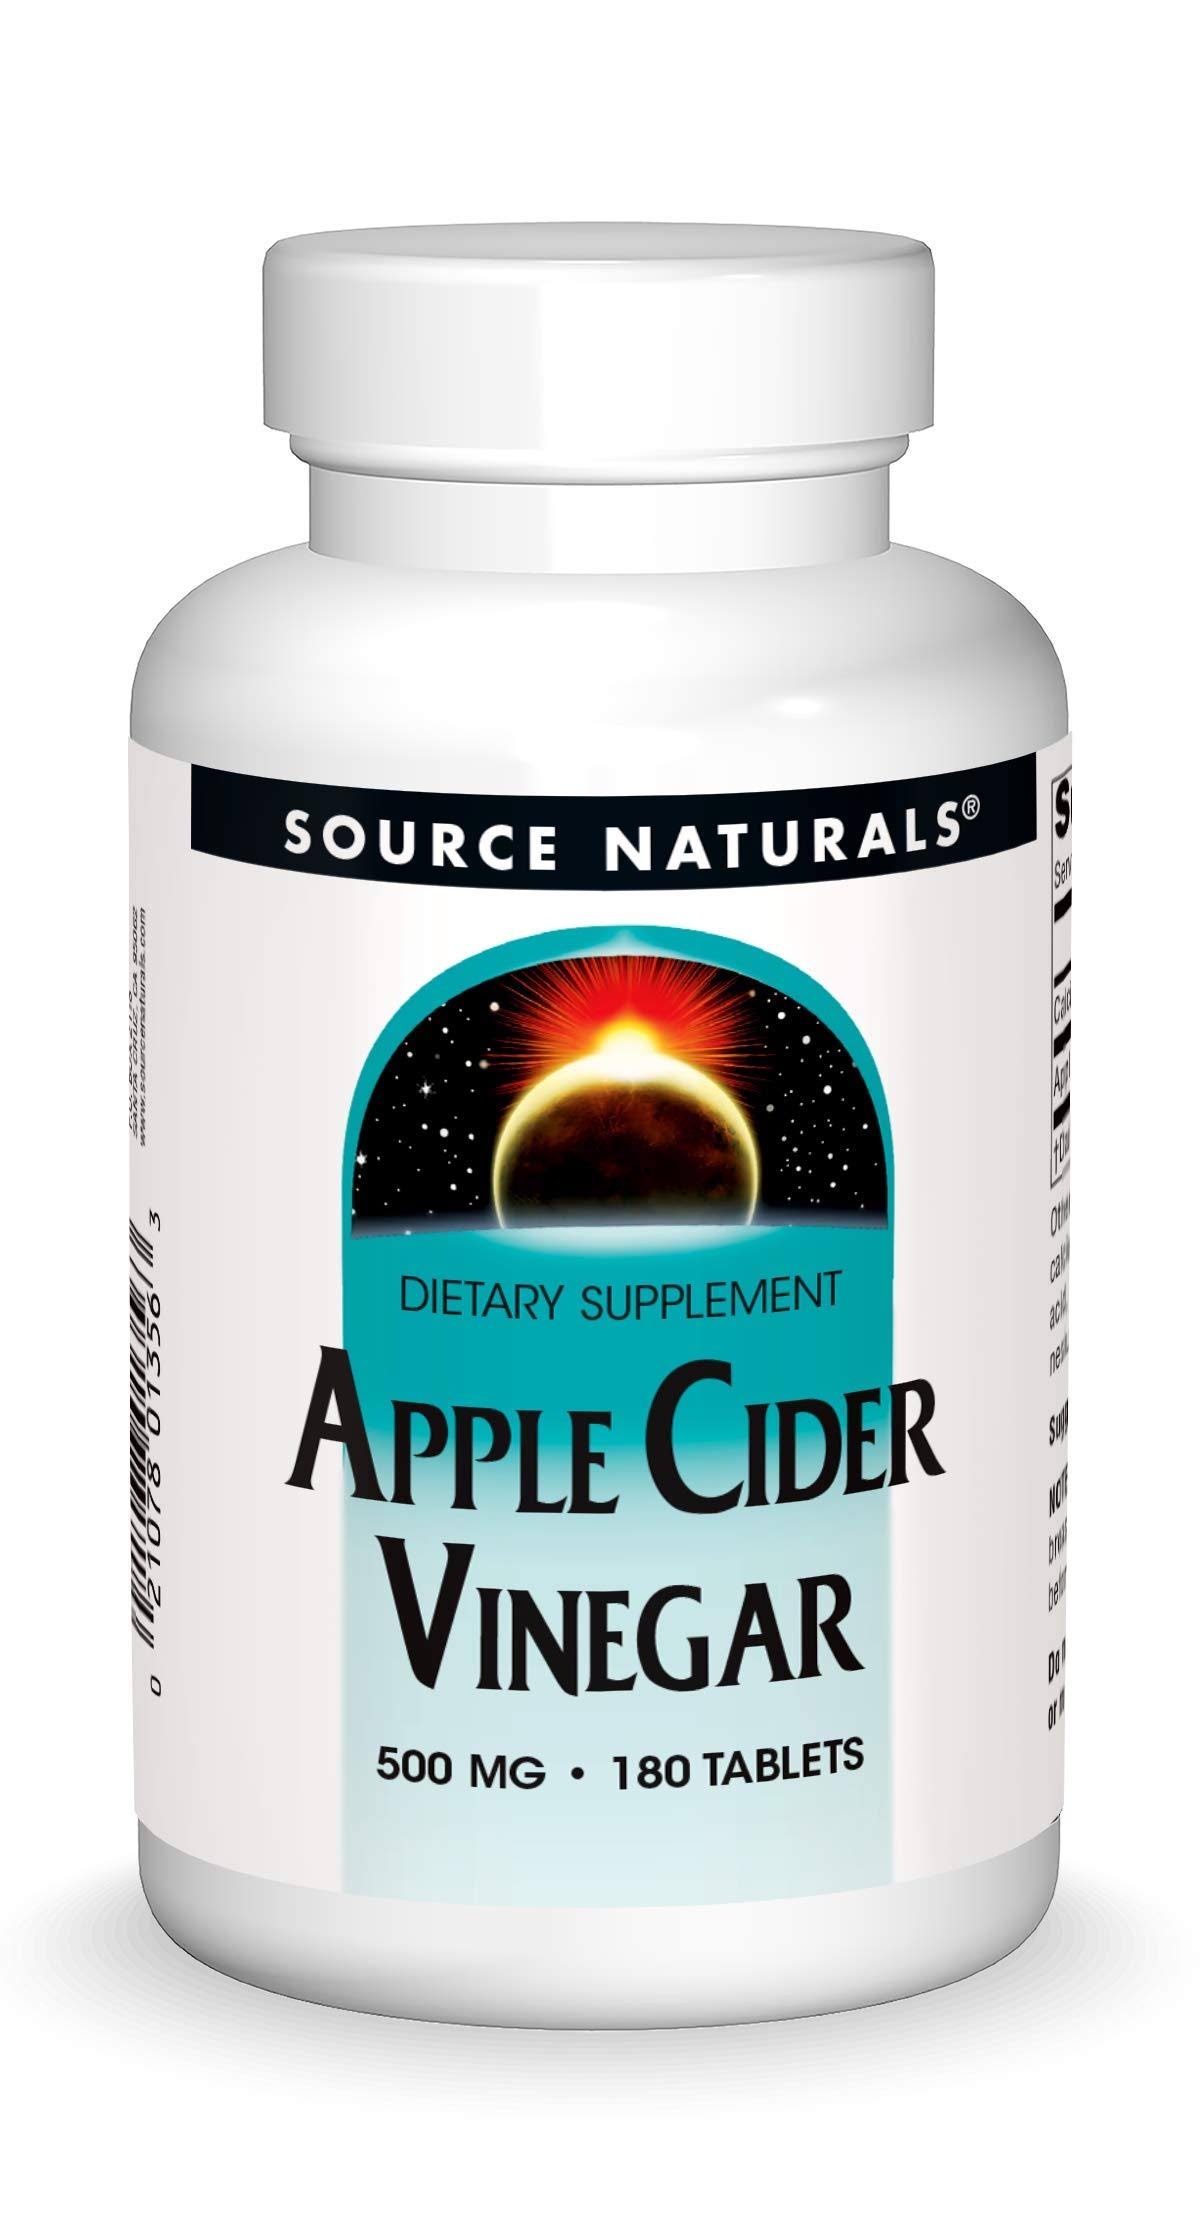 Source Naturals Apple Cider Vinegar Supplement - 500mg, 180 Tablets